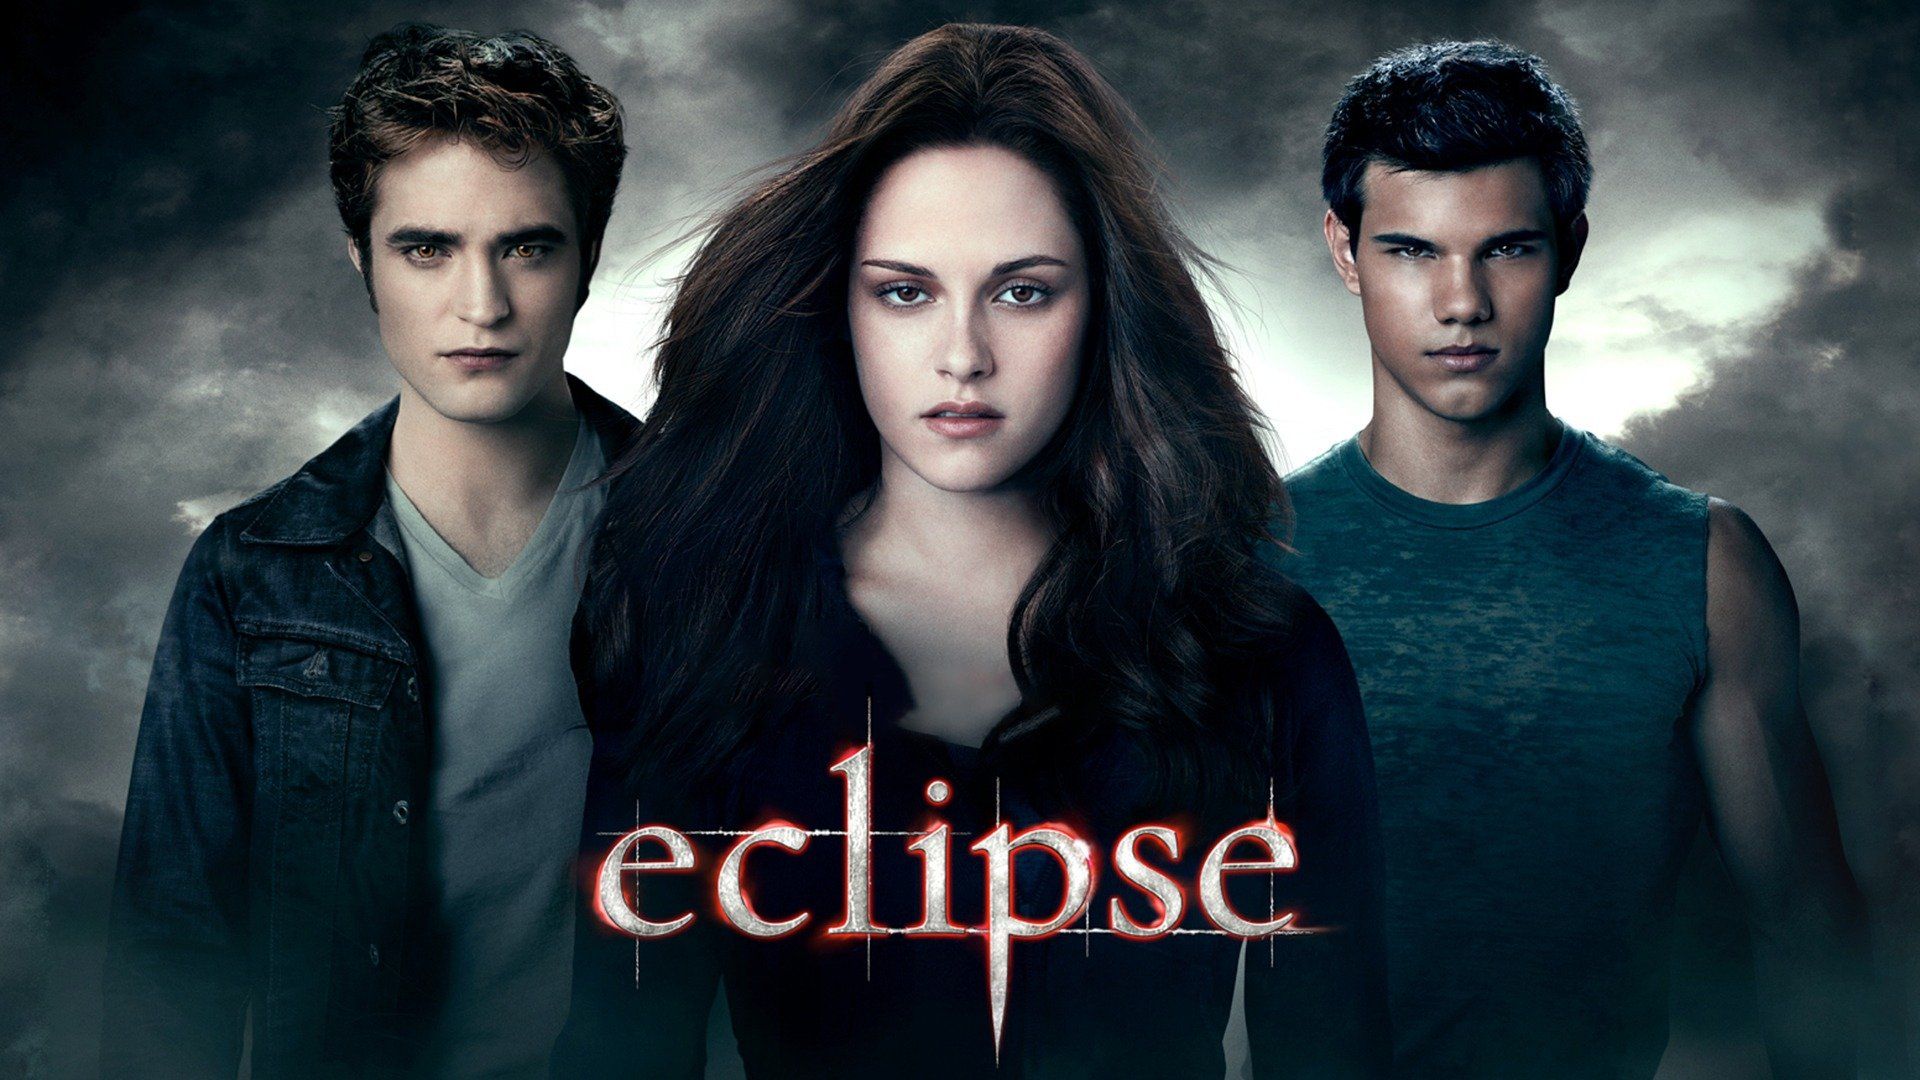 Watch The Twilight Saga Eclipse (2010) Full Movie Online Plex